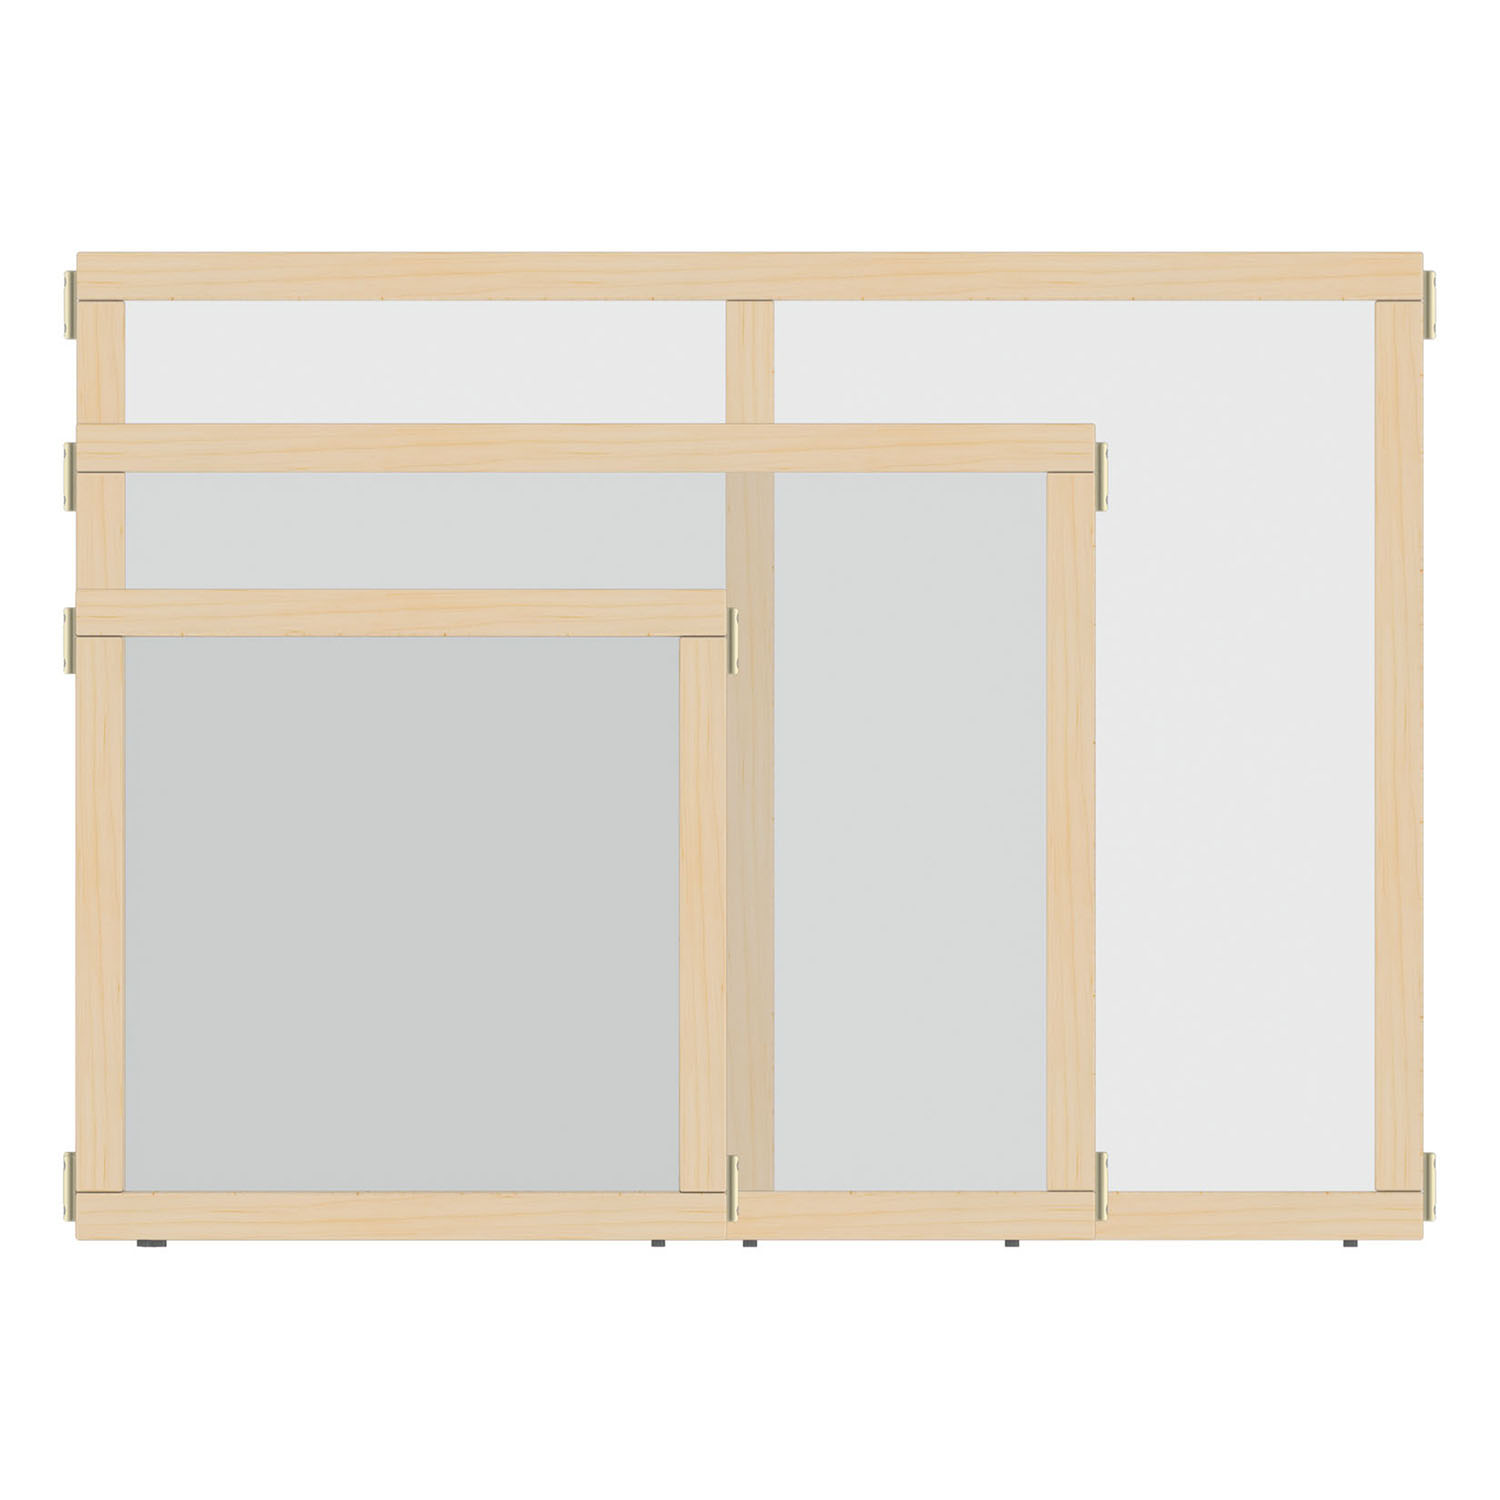 KYDZ Suite® Clear-View Plexi Panels, 24½"H